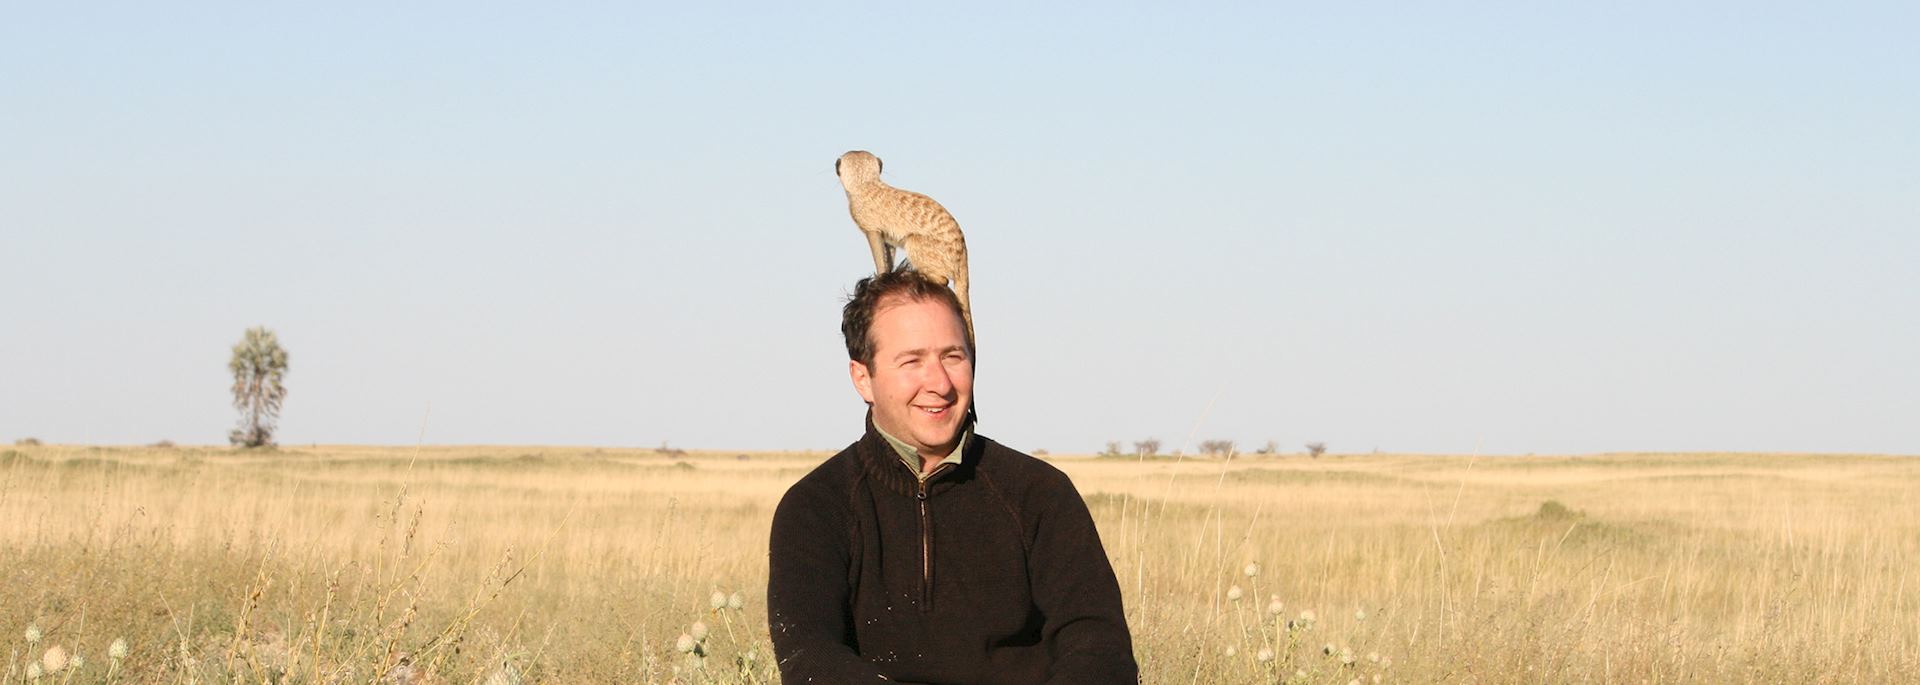 James shows off his new meerkat hat, Botswana